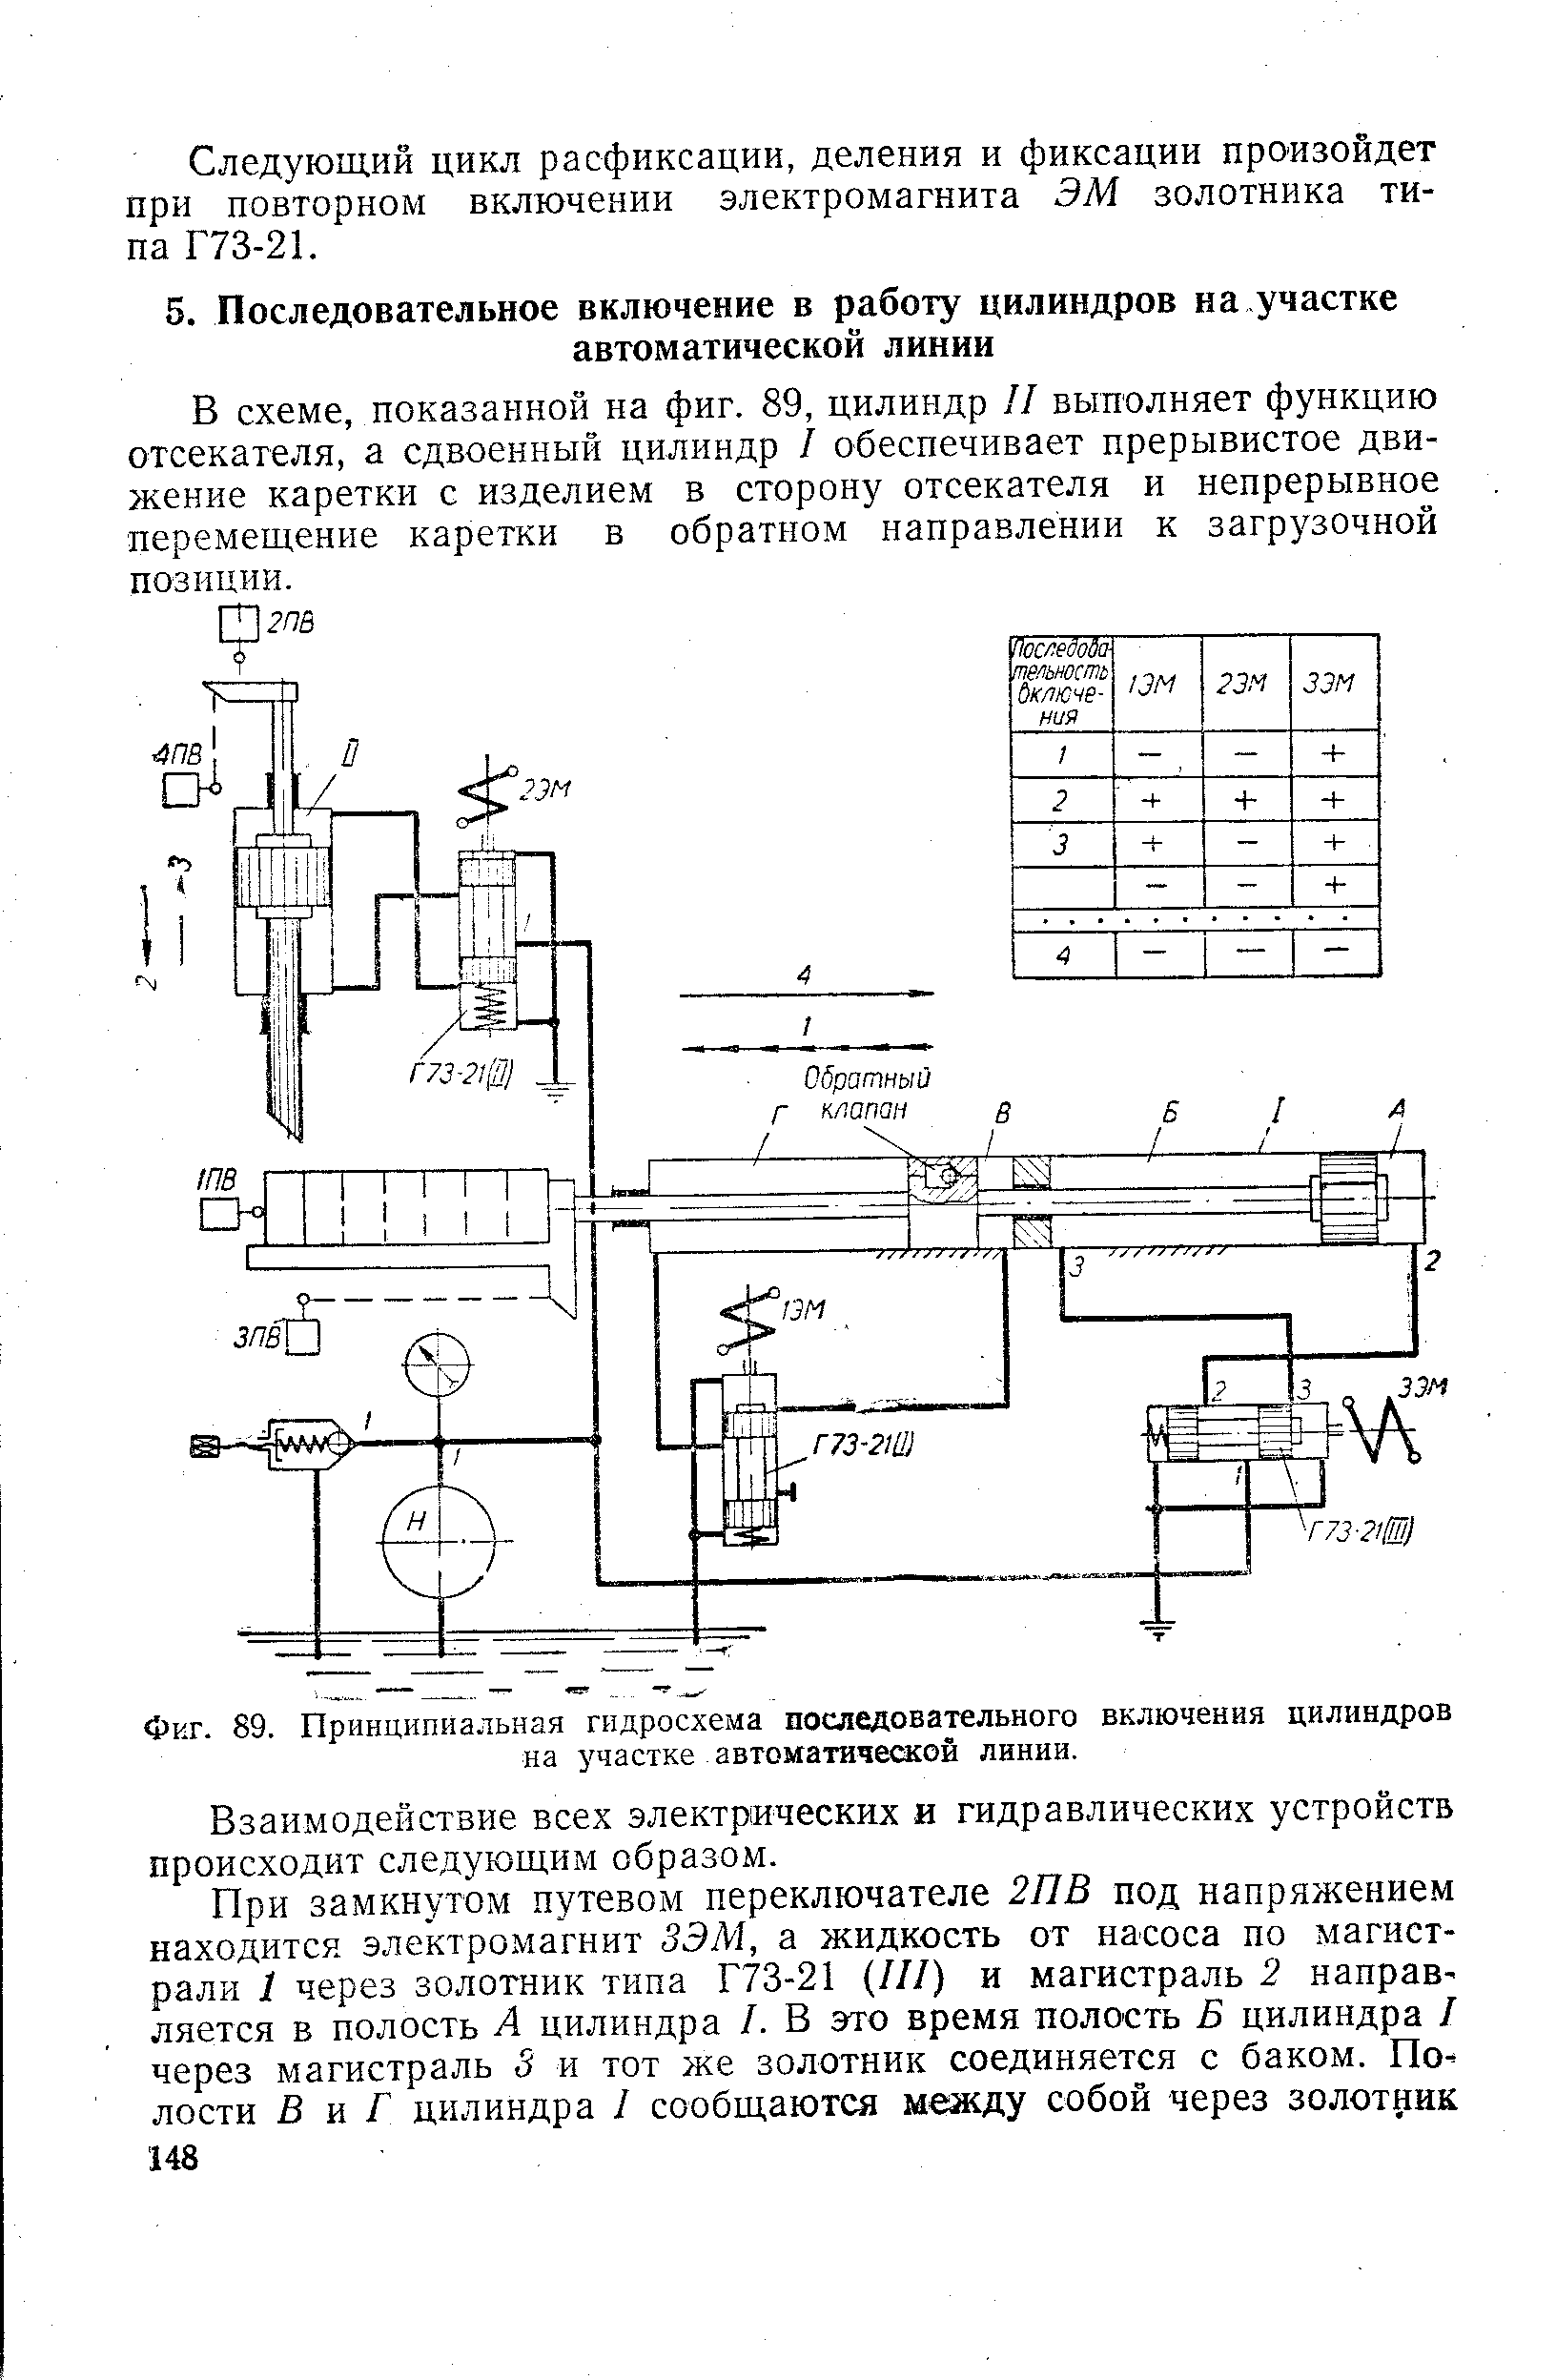 Фиг. 89. Принципиальная гидросхема посладовательного включения цилиндров на участке автоматической линии.
